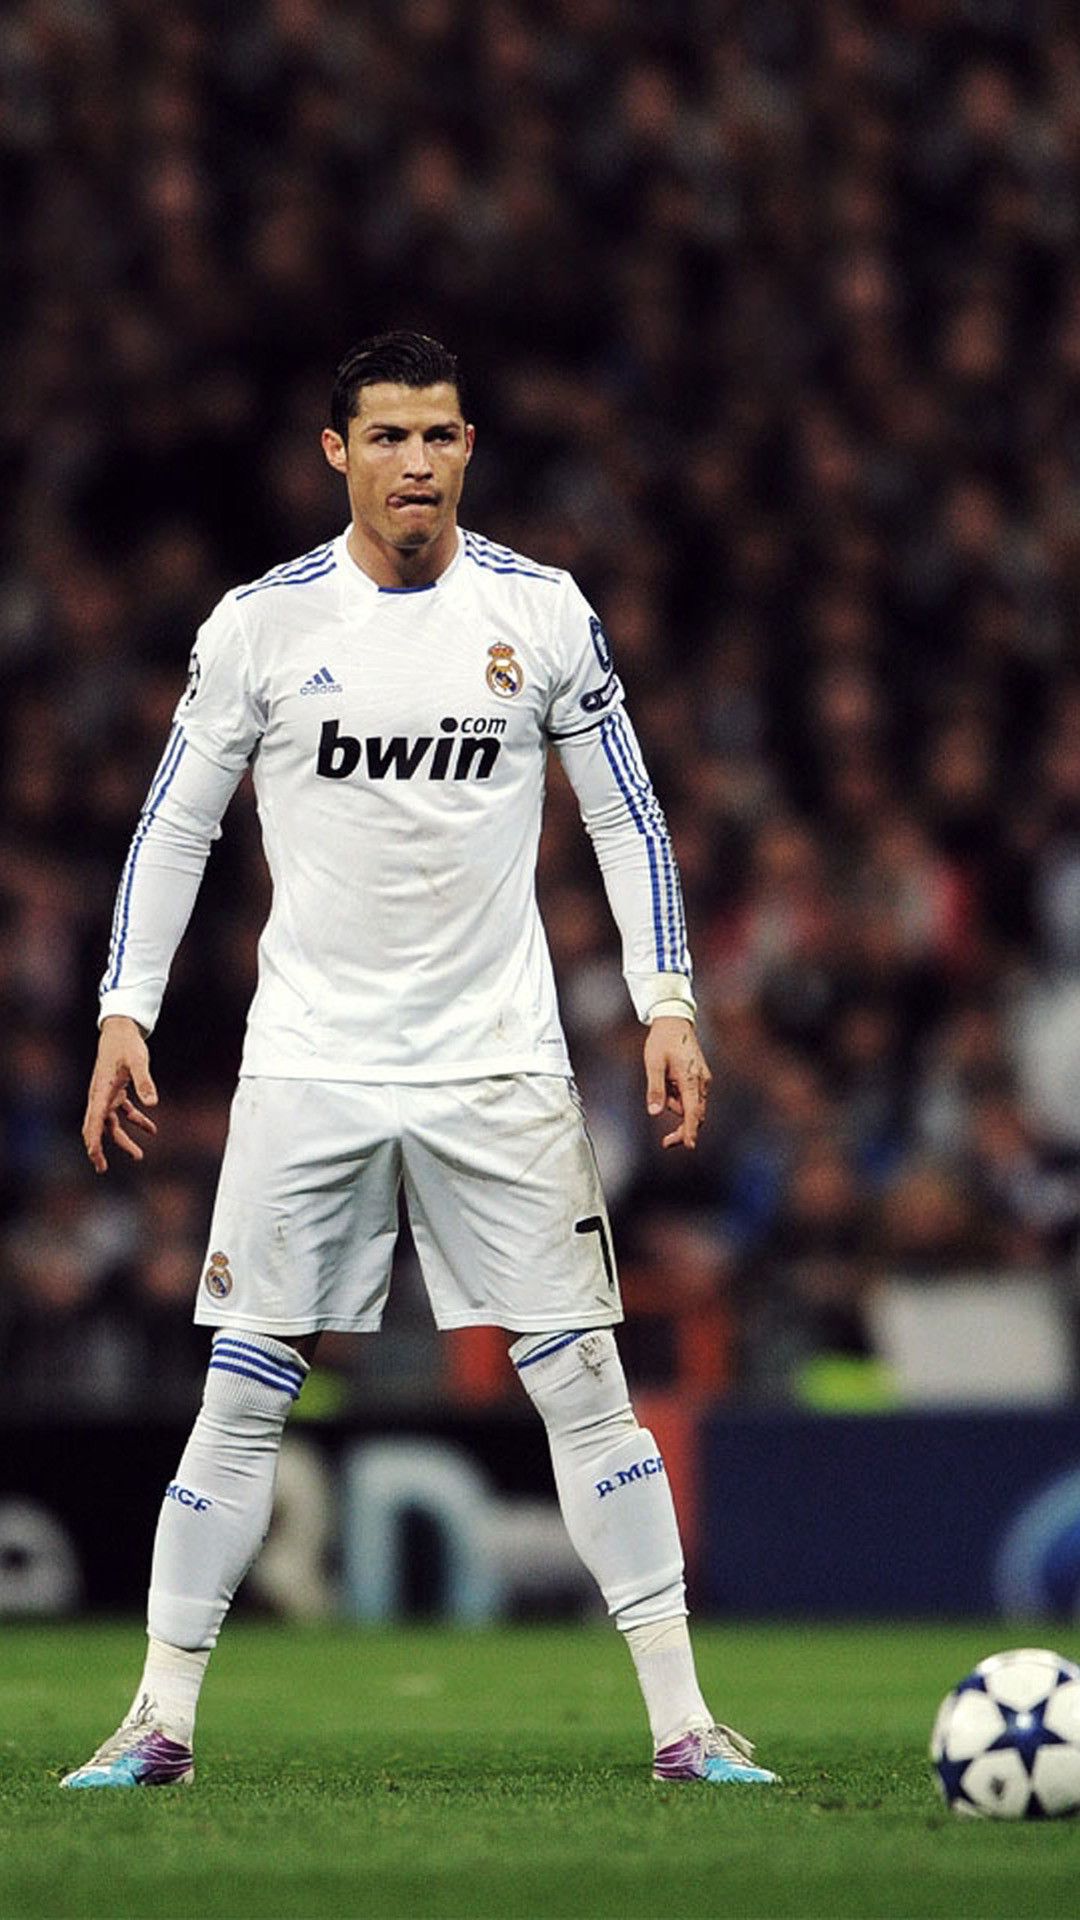 Cristiano Ronaldo iPhone Wallpaper HD